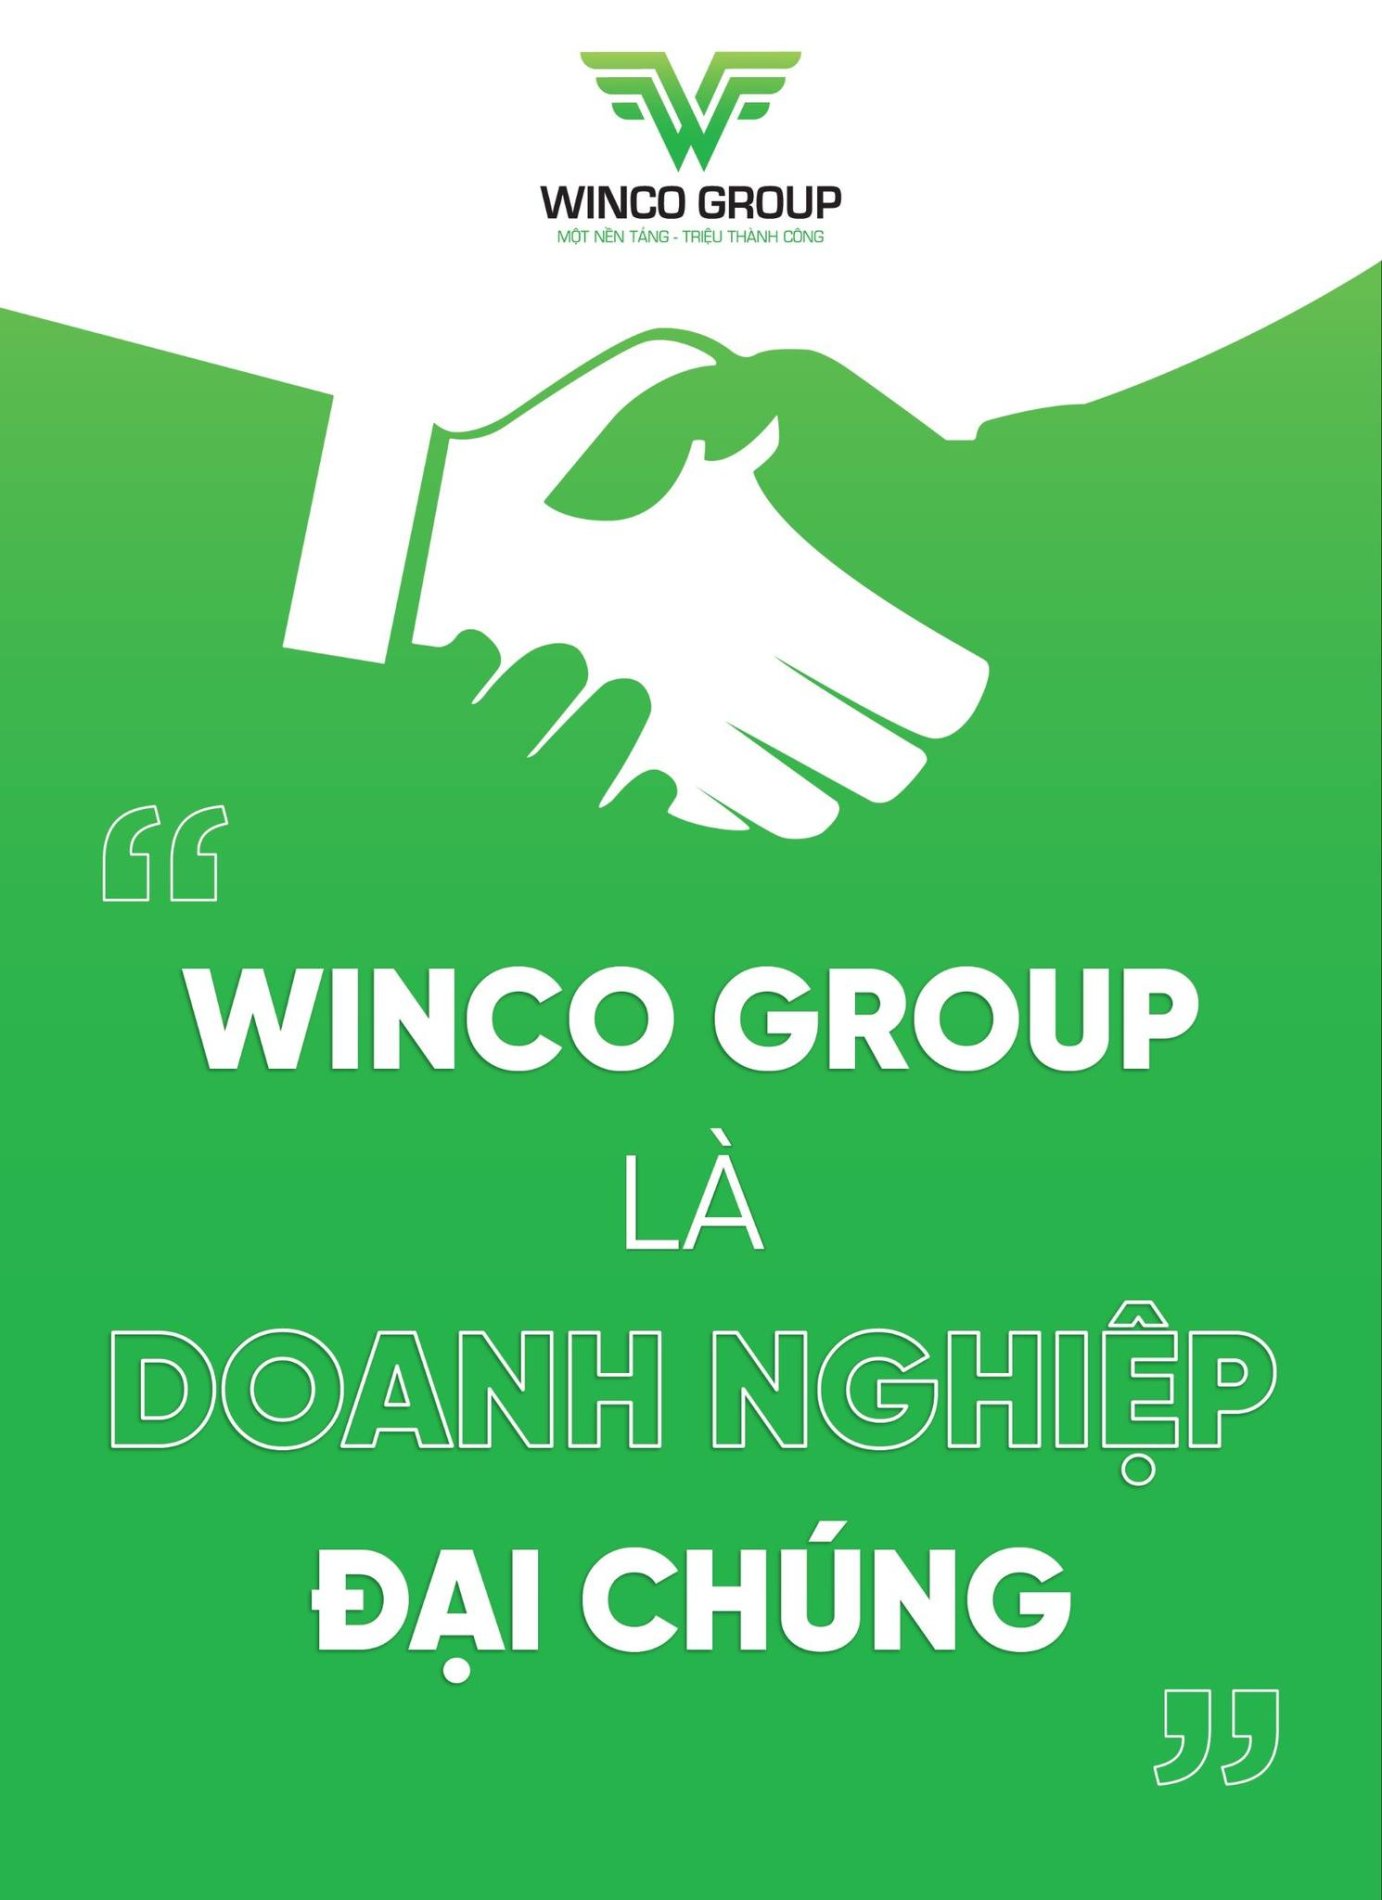 WINCO GROUP LÀ DOANH NGHIỆP ĐẠI CHÚNG